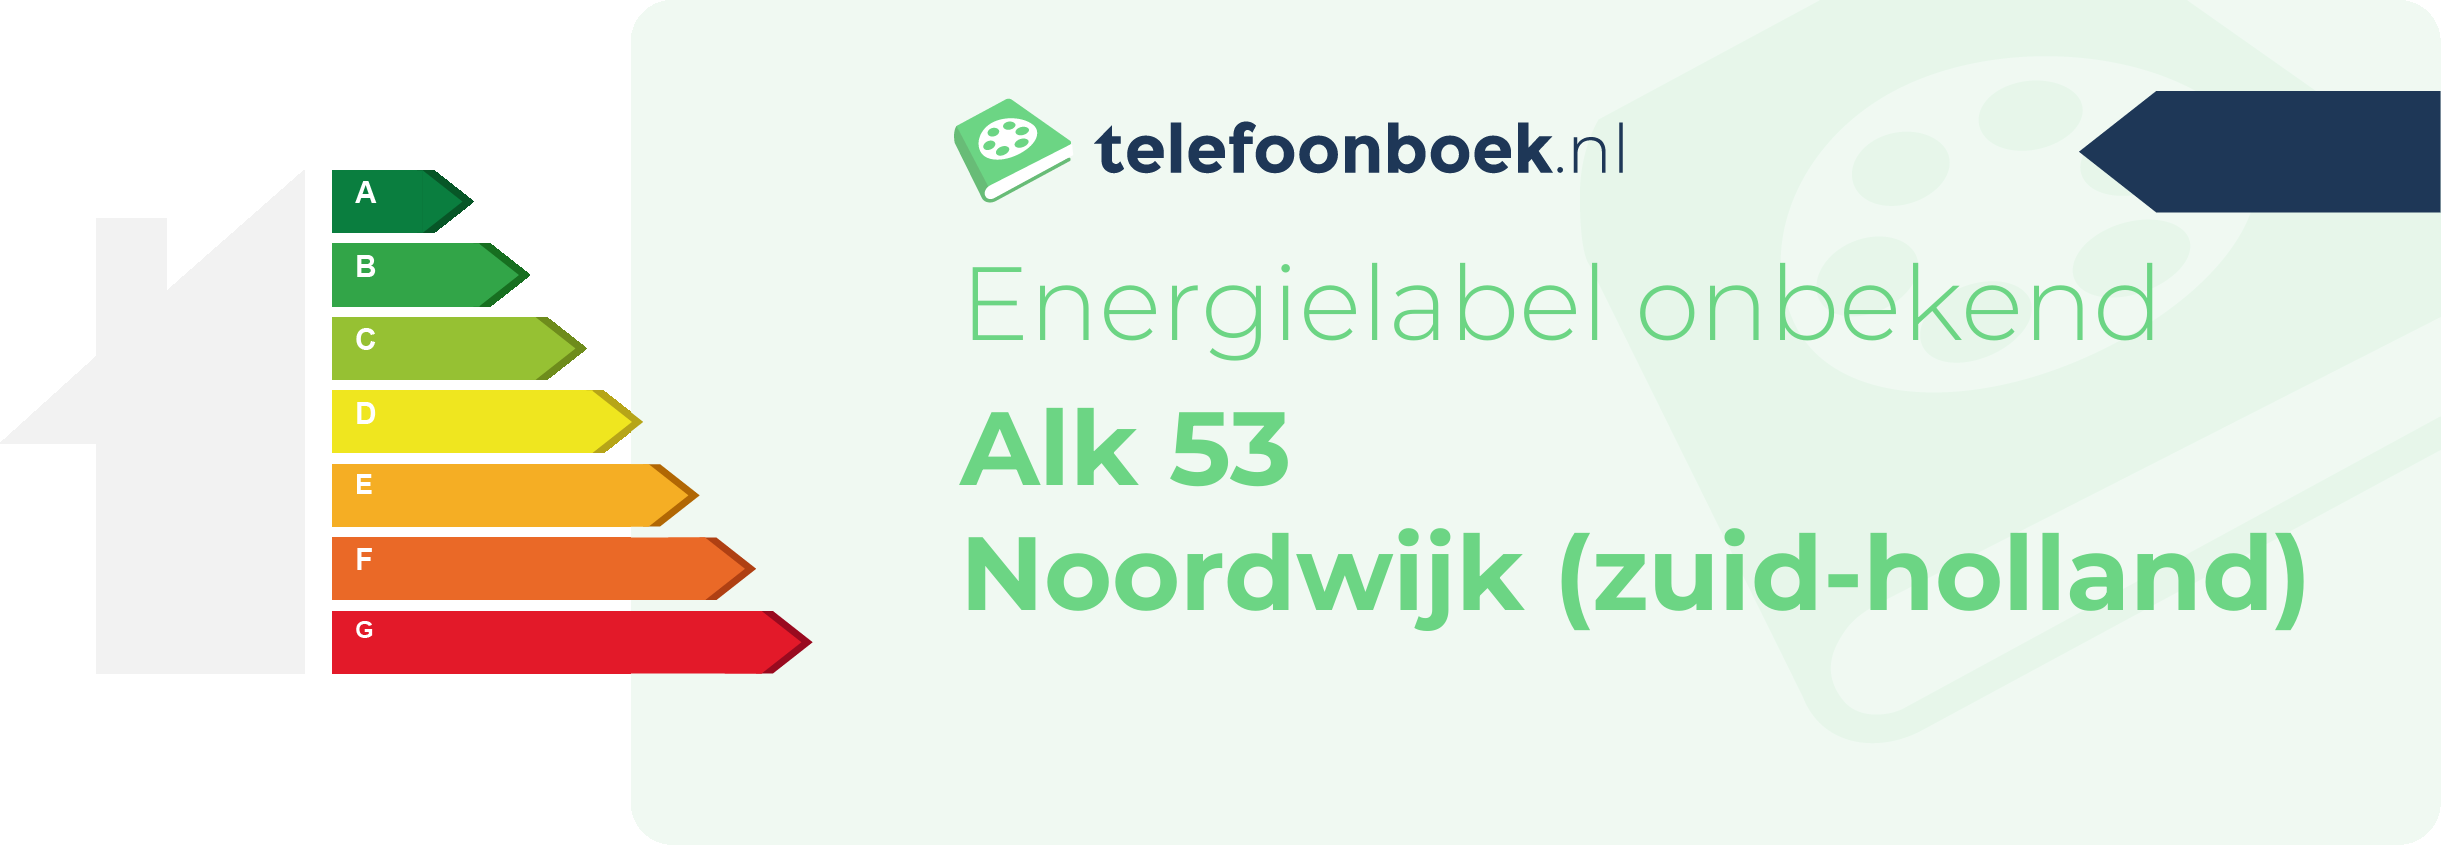 Energielabel Alk 53 Noordwijk (Zuid-Holland)